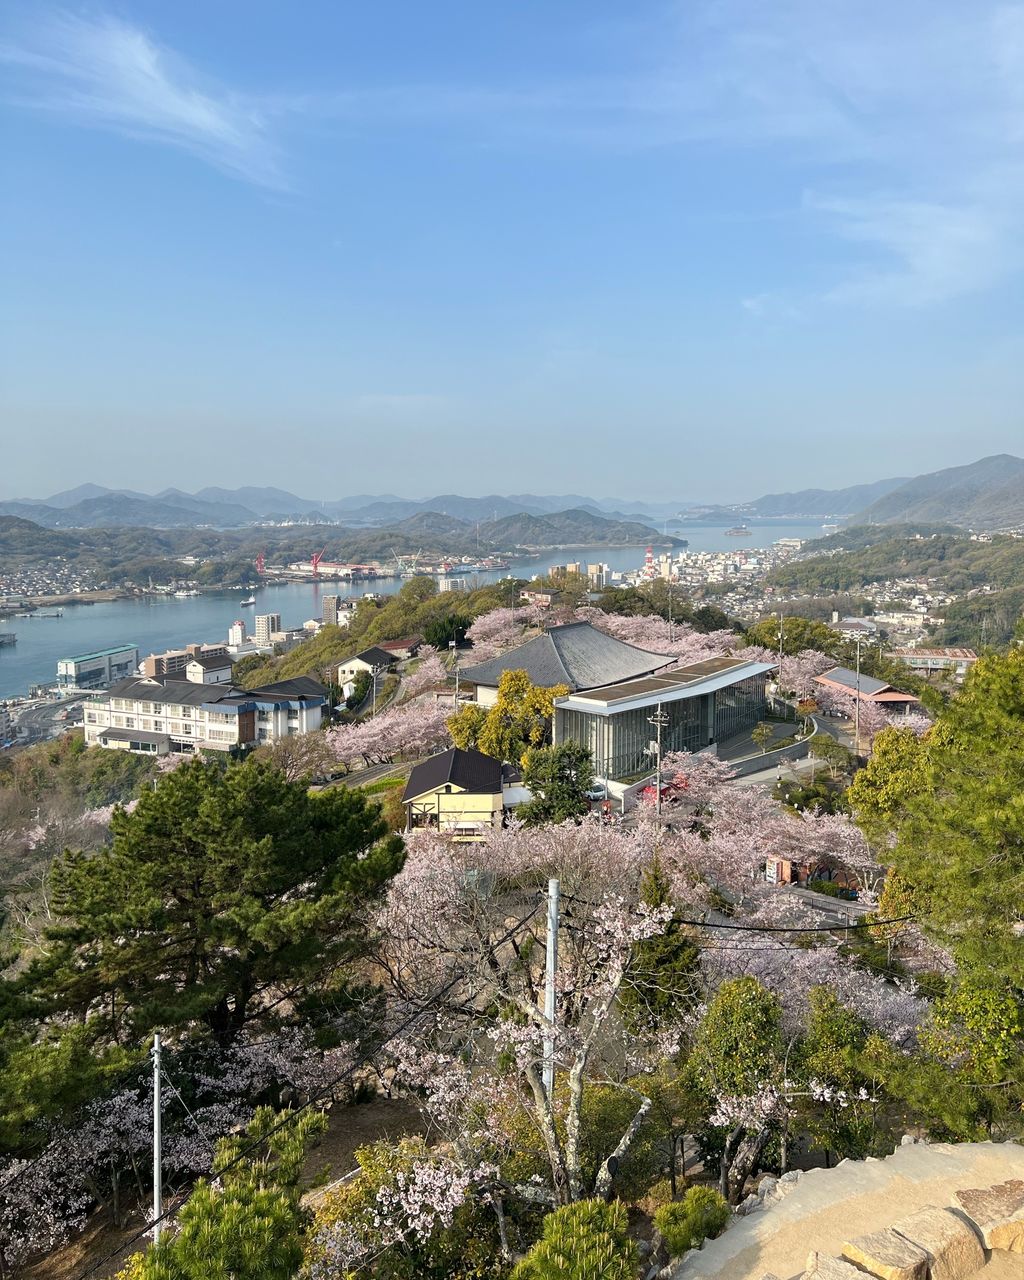 千光寺 広島 坂の町 尾道 桜と瀬戸内海の美しい風景を楽しもう